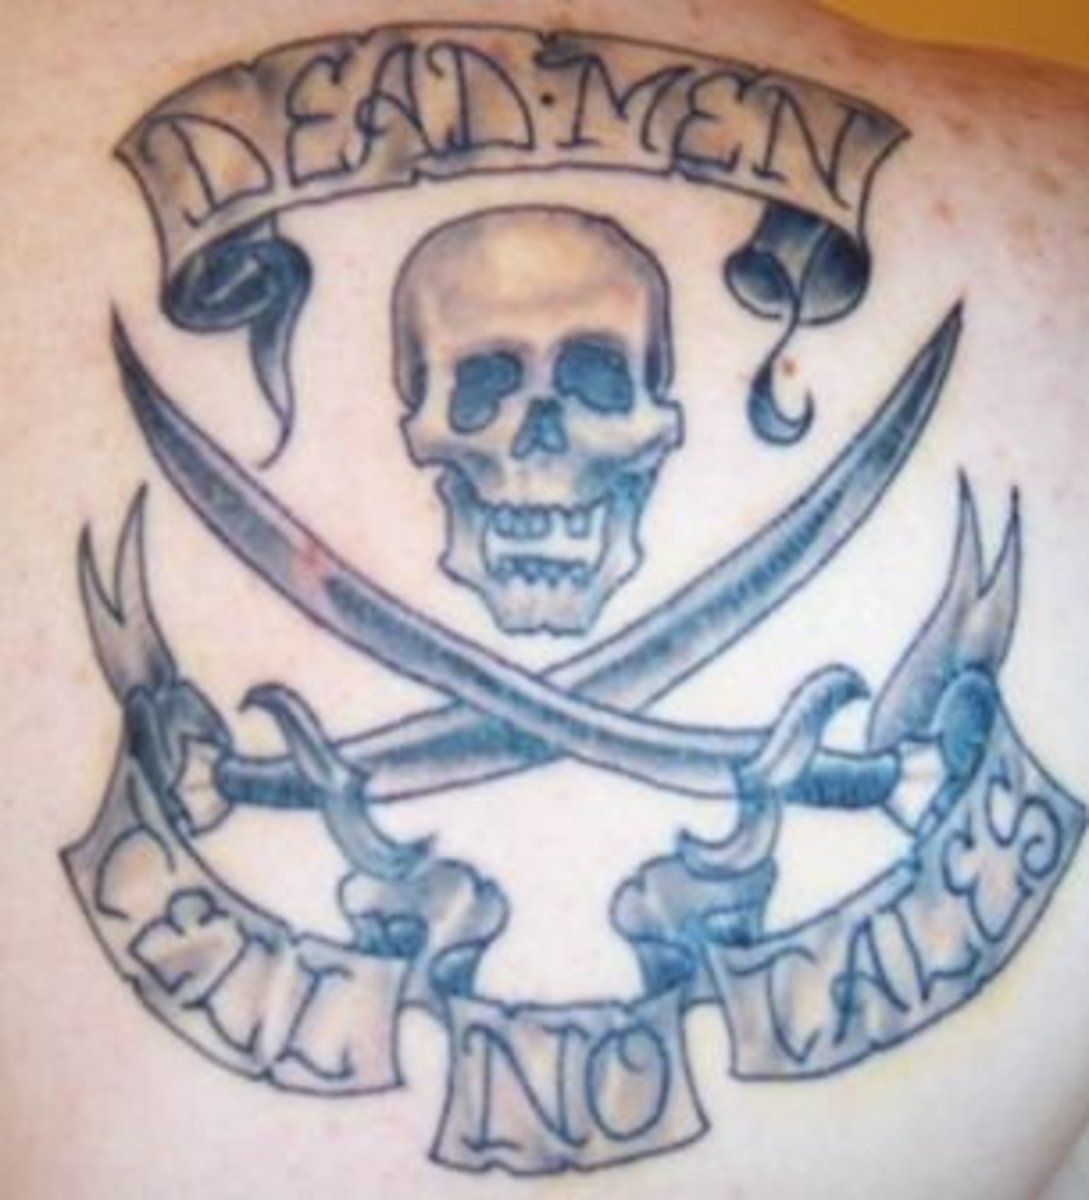 Пиратские идеи татуировки: черепа, корабли, и многое другое.